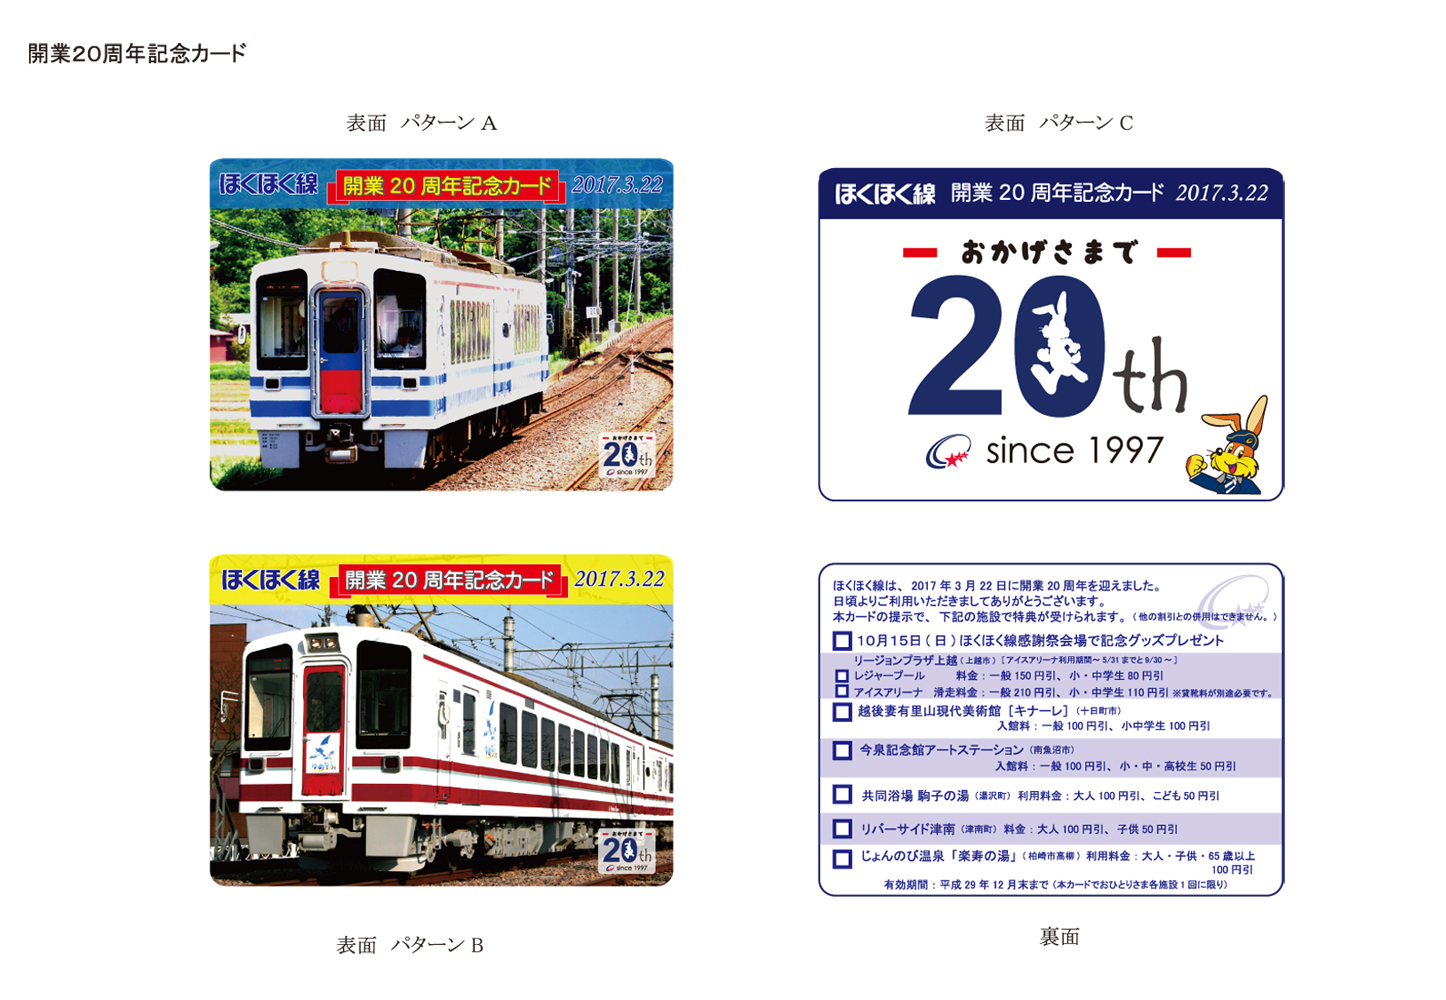 ほくほく線開業周年 記念カードプレゼント イベント 上越妙高タウン情報